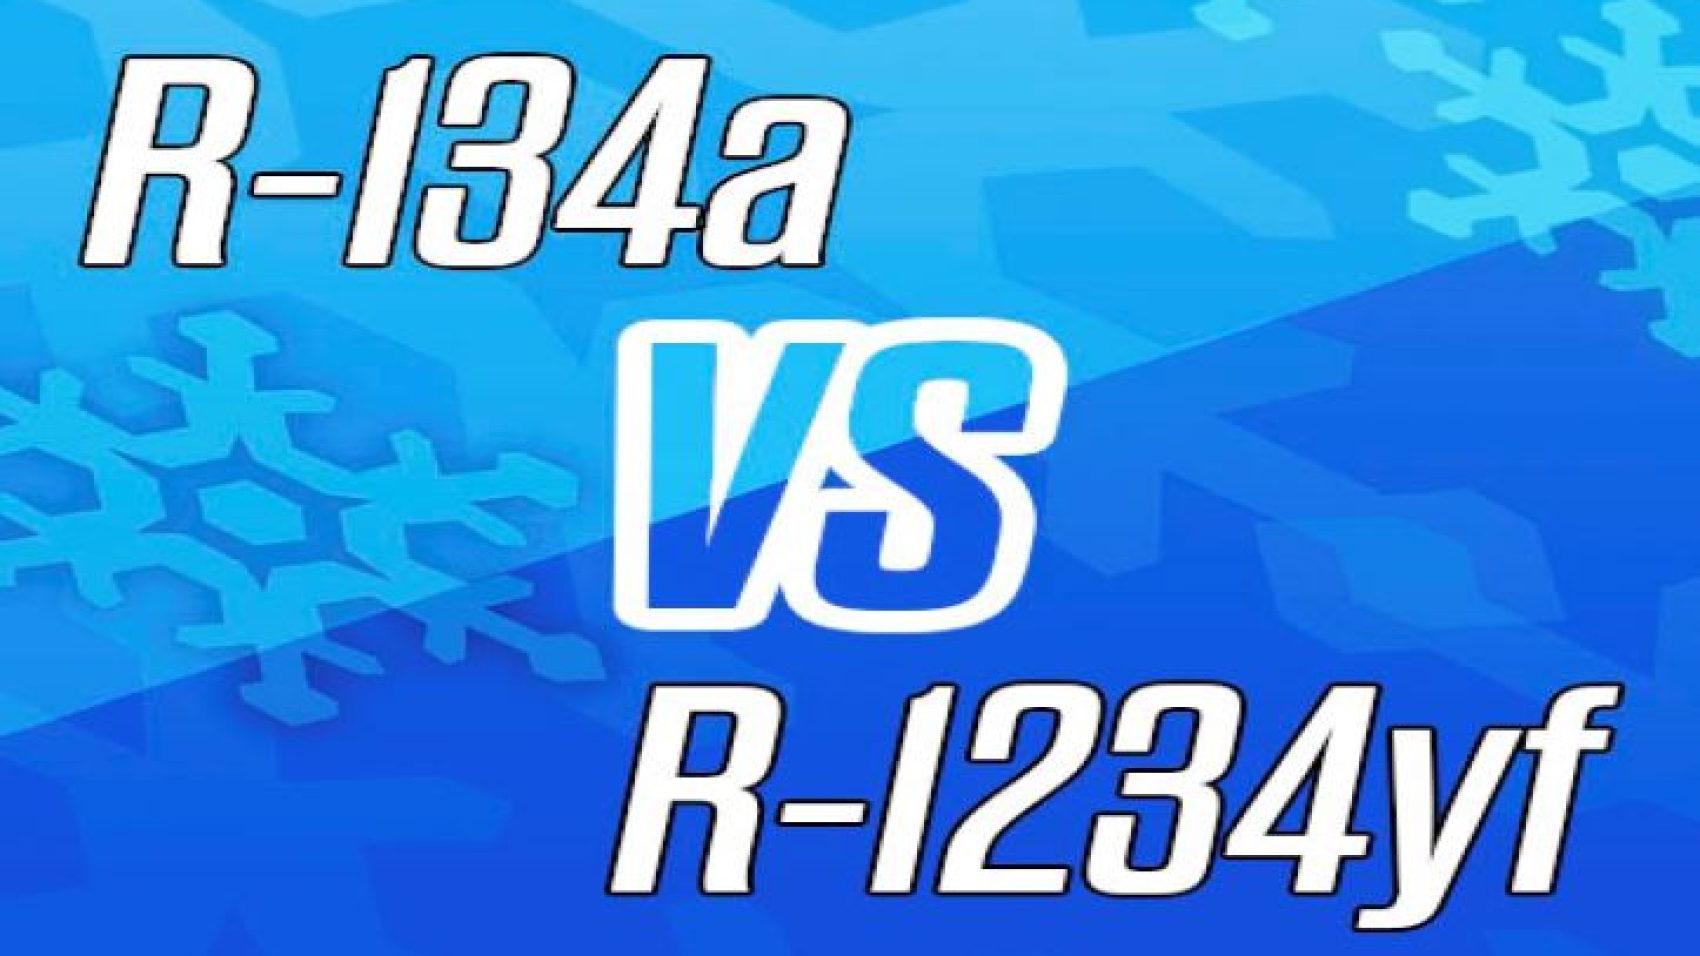 Diferente R134a si R1234yf